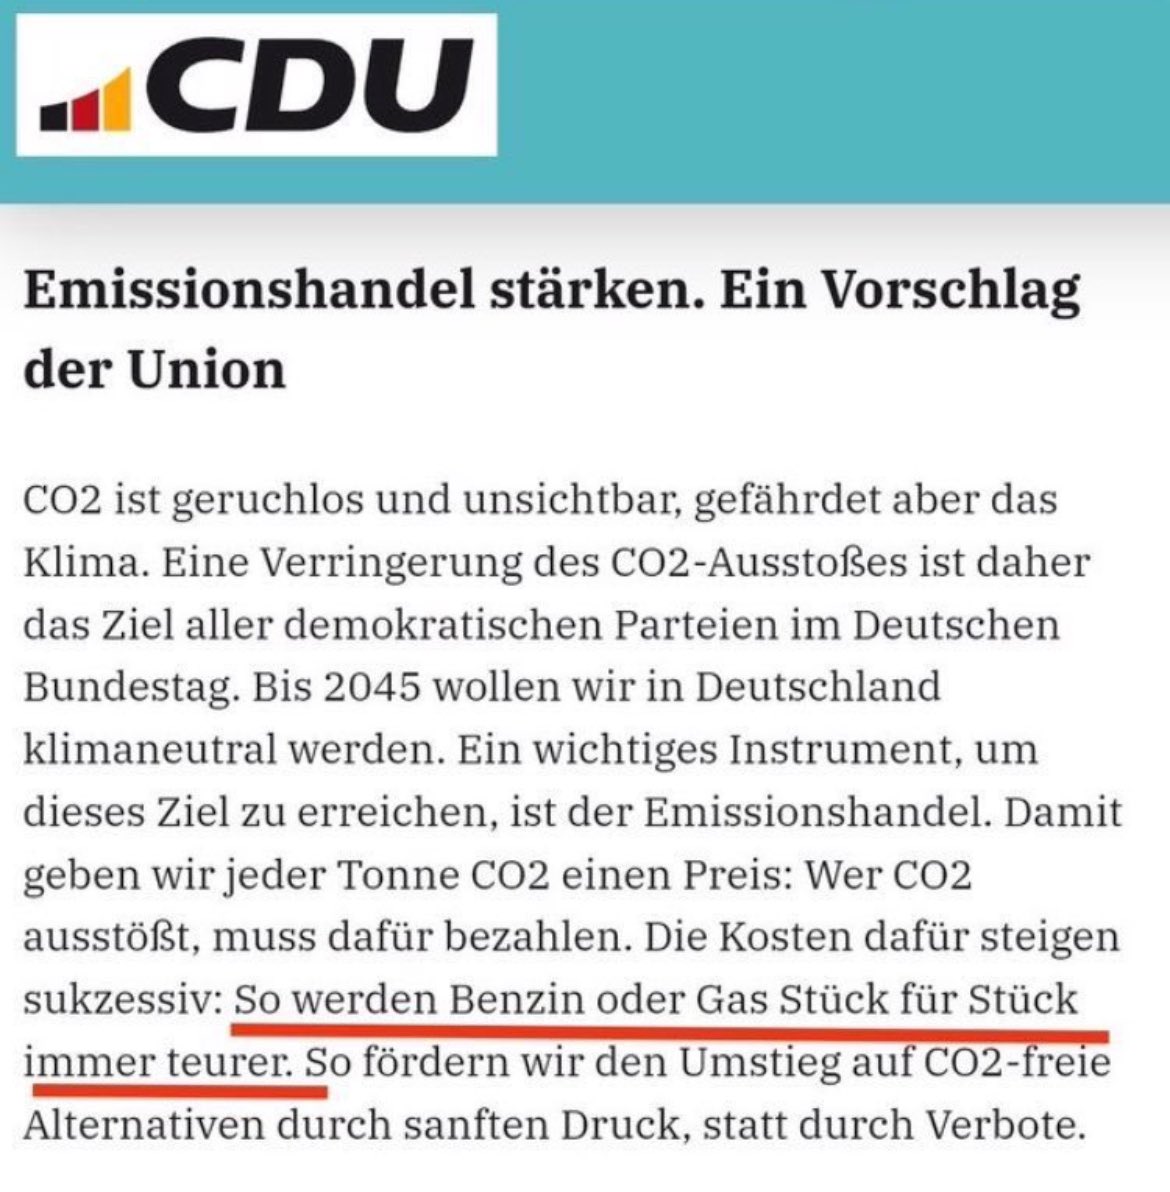 Ein Screenshot von der CDU Homepage, der einen Vorschlag aus dem August 2023 für das Grundsatzprogramm zeigt, das gestern verabschiedet wurde.

Im finalen Programm ist der Emissionshandel weiter enthalten, die Folgen sind klar, aber den markierten Satz haben sie gestrichen. Zu